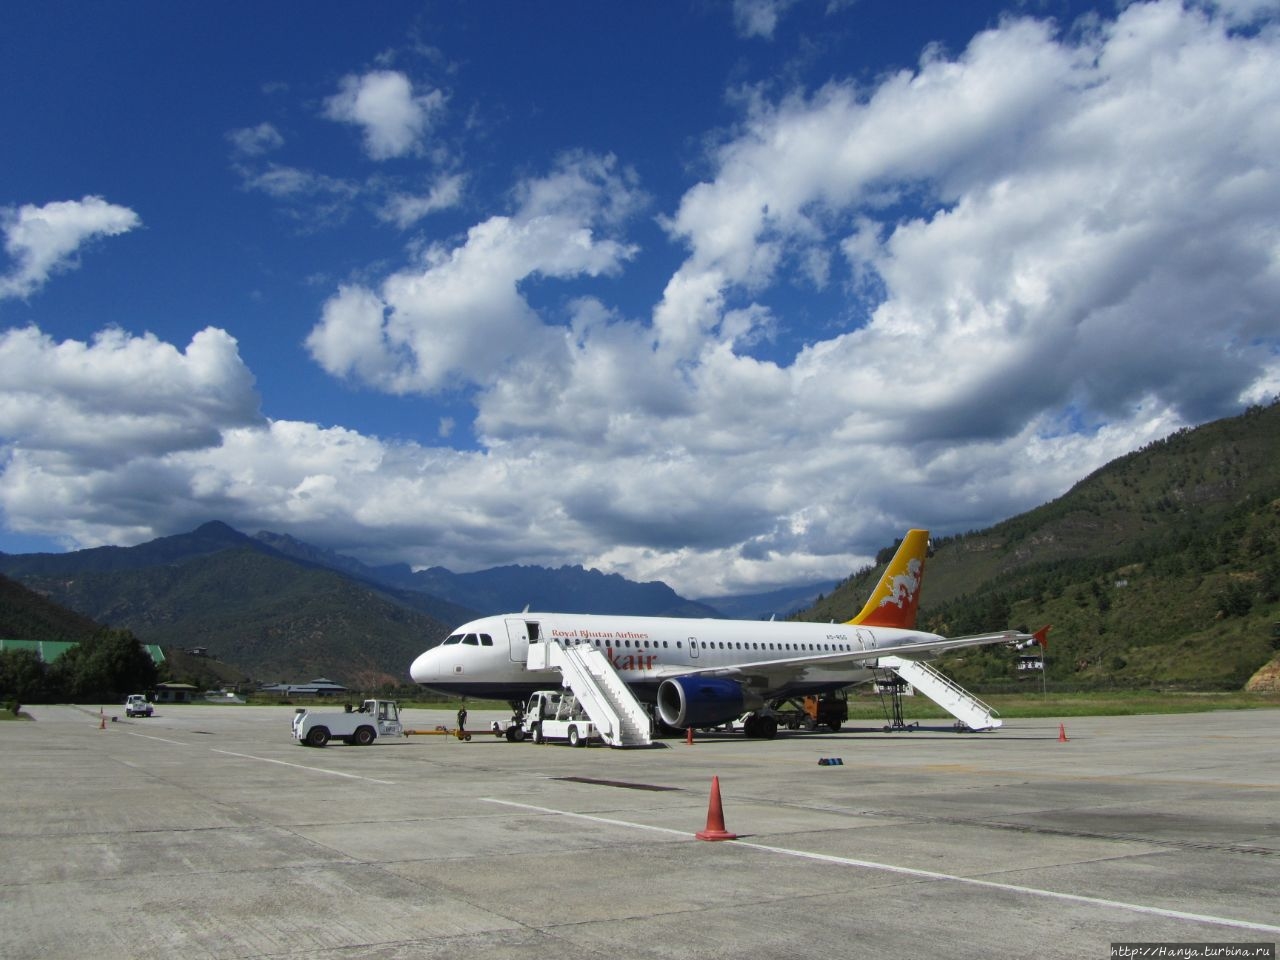 Аэропорт бутана. Аэропорт паро. Бутан аэропорт. Аэропорт паро в бутане посадка самолета. Тхимпху аэропорт.